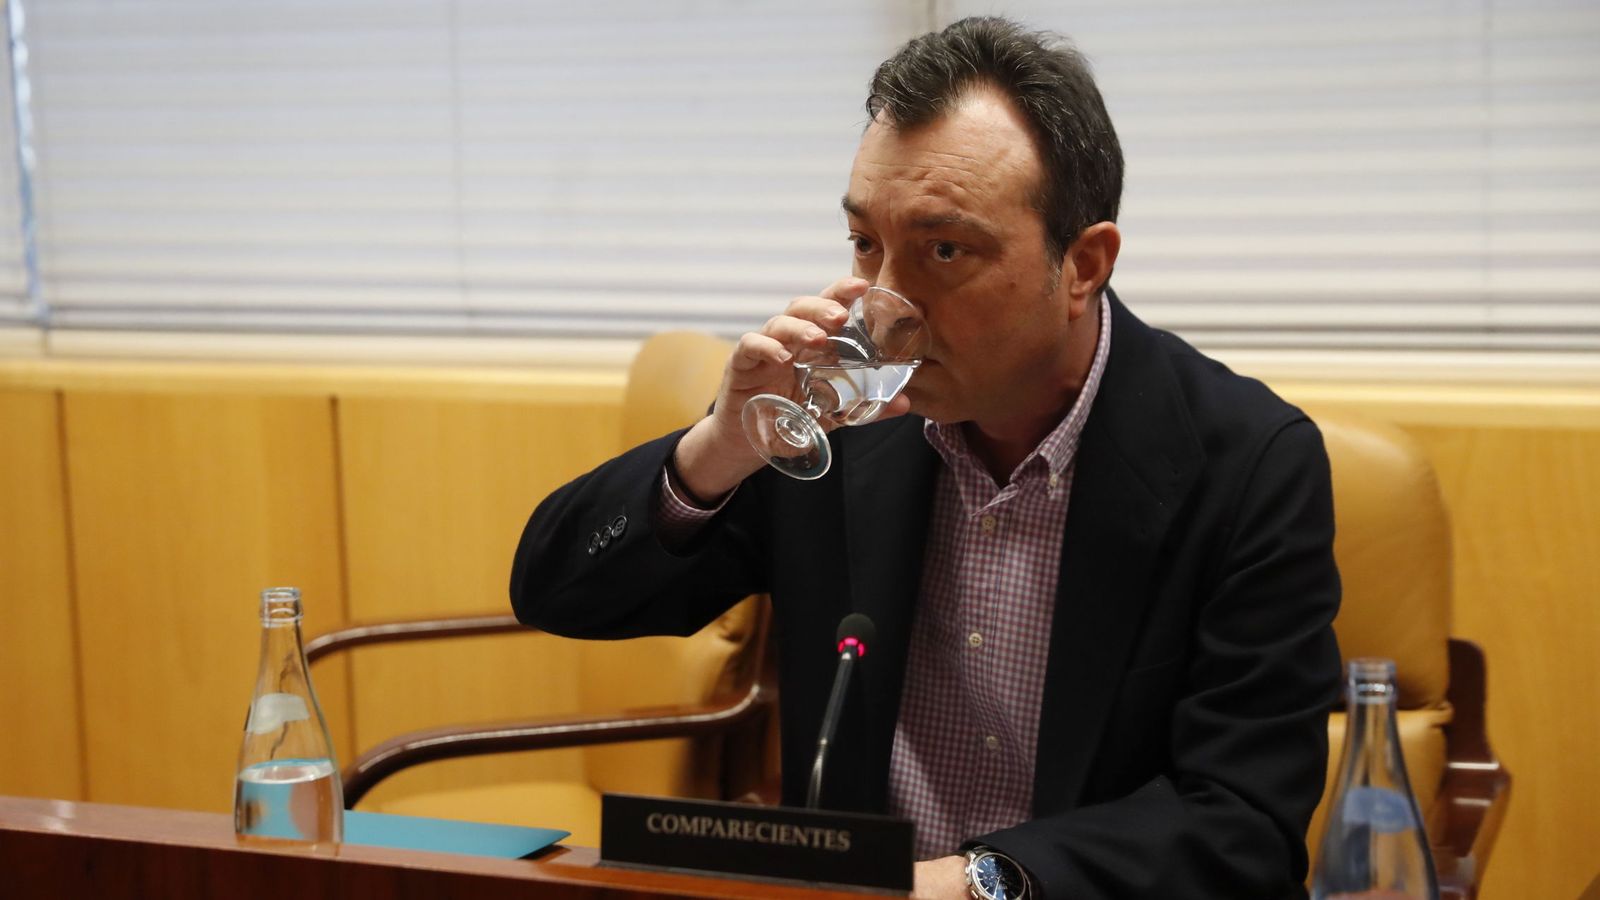 Foto: Manuel Cobo, uno de los supuestos espiados, durante su comparecencia en la Asamblea de Madrid en marzo de 2017. (EFE)